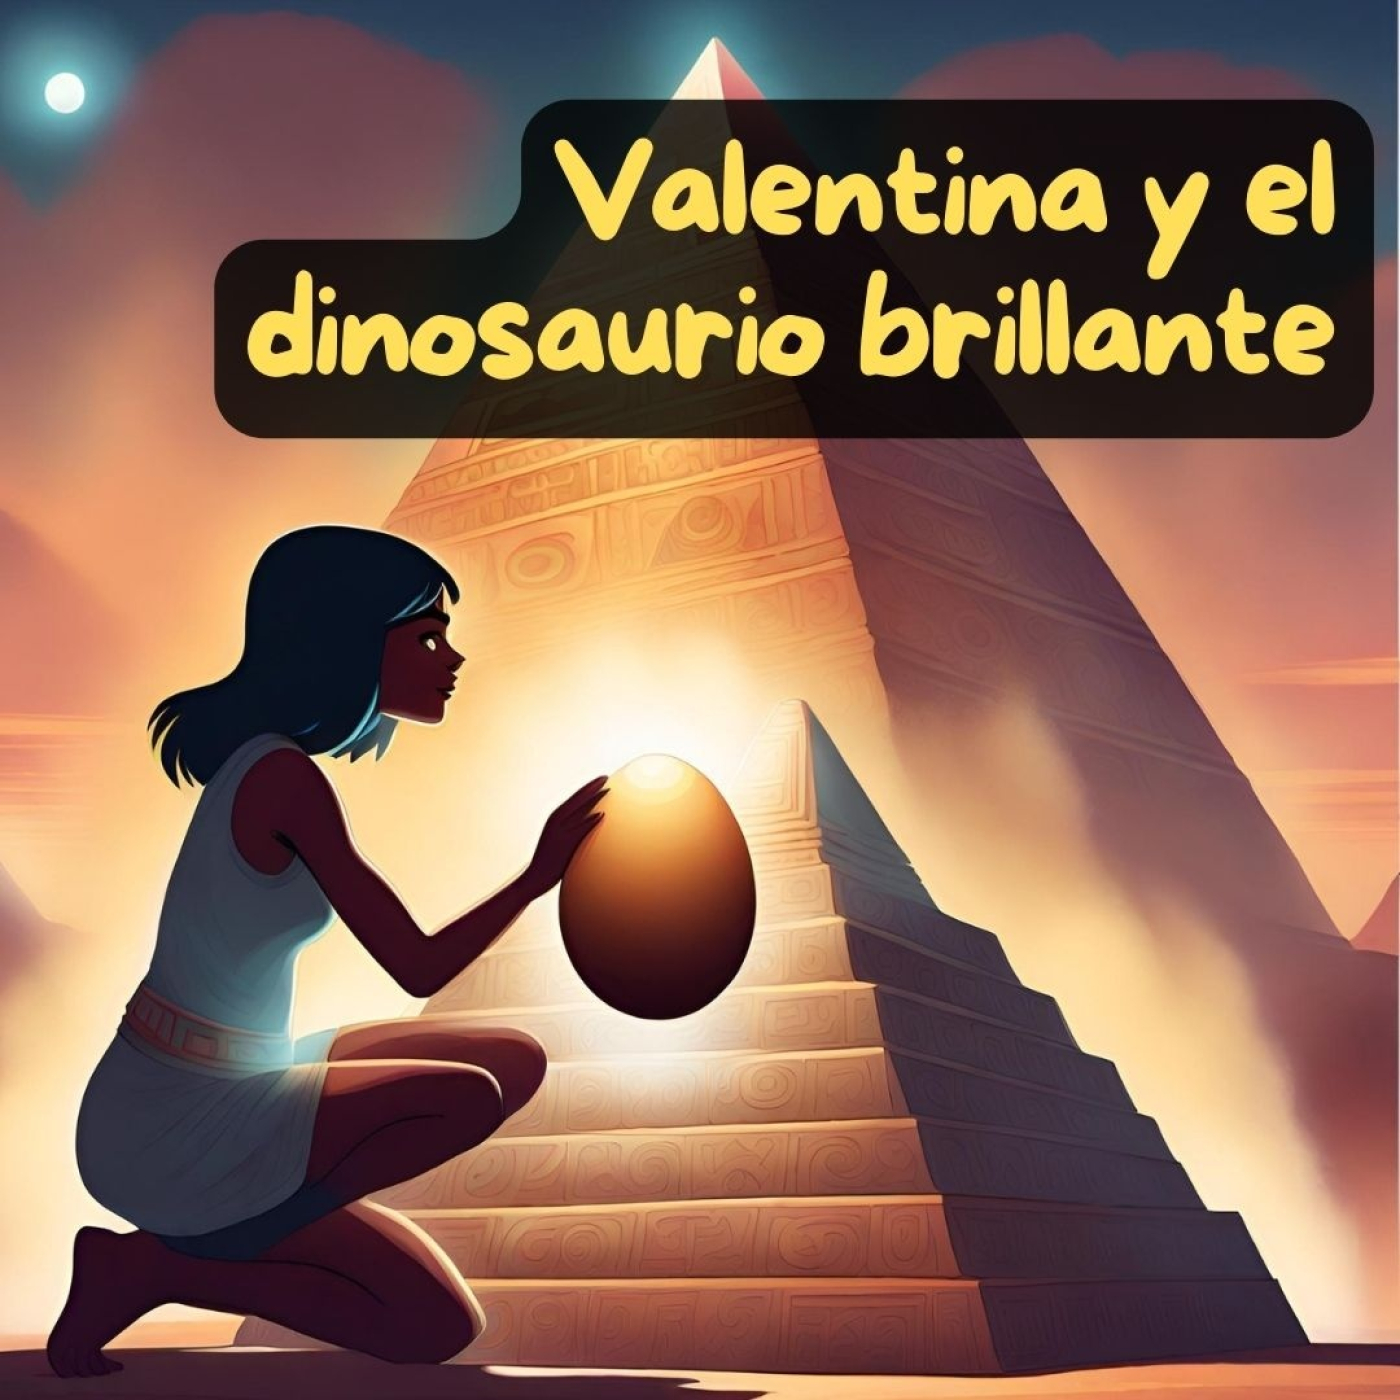 Valentina y el dinosaurio brillante